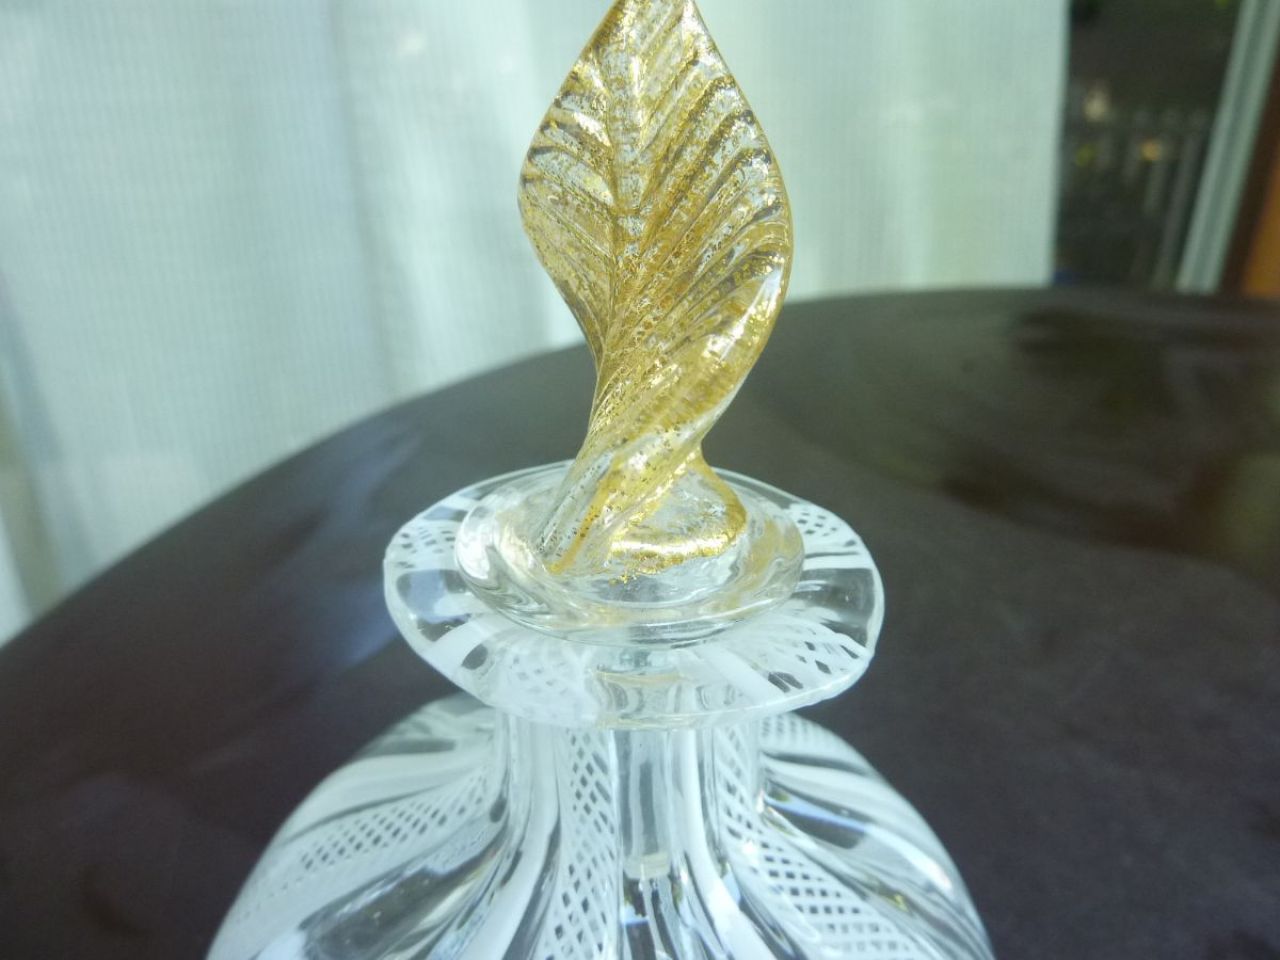 flacon à parfum en verre soufflé "filigrana", magnifique réalisation des artisans de Murano, bouchon en cristal à forme de feuille recouverte d'or